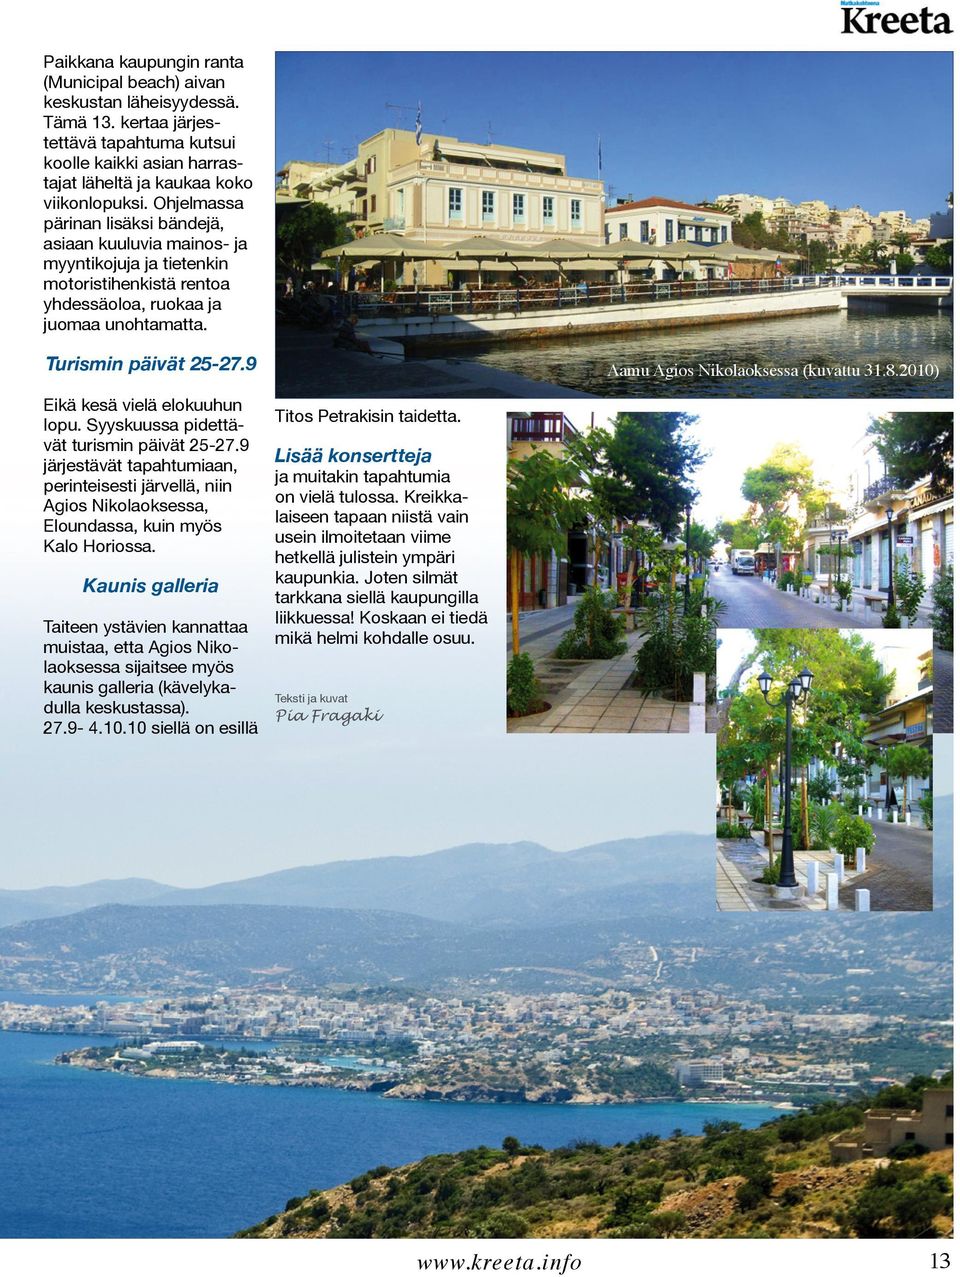 9 Aamu Agios Nikolaoksessa (kuvattu 31.8.2010) Eikä kesä vielä elokuuhun lopu. Syyskuussa pidettävät turismin päivät 25-27.